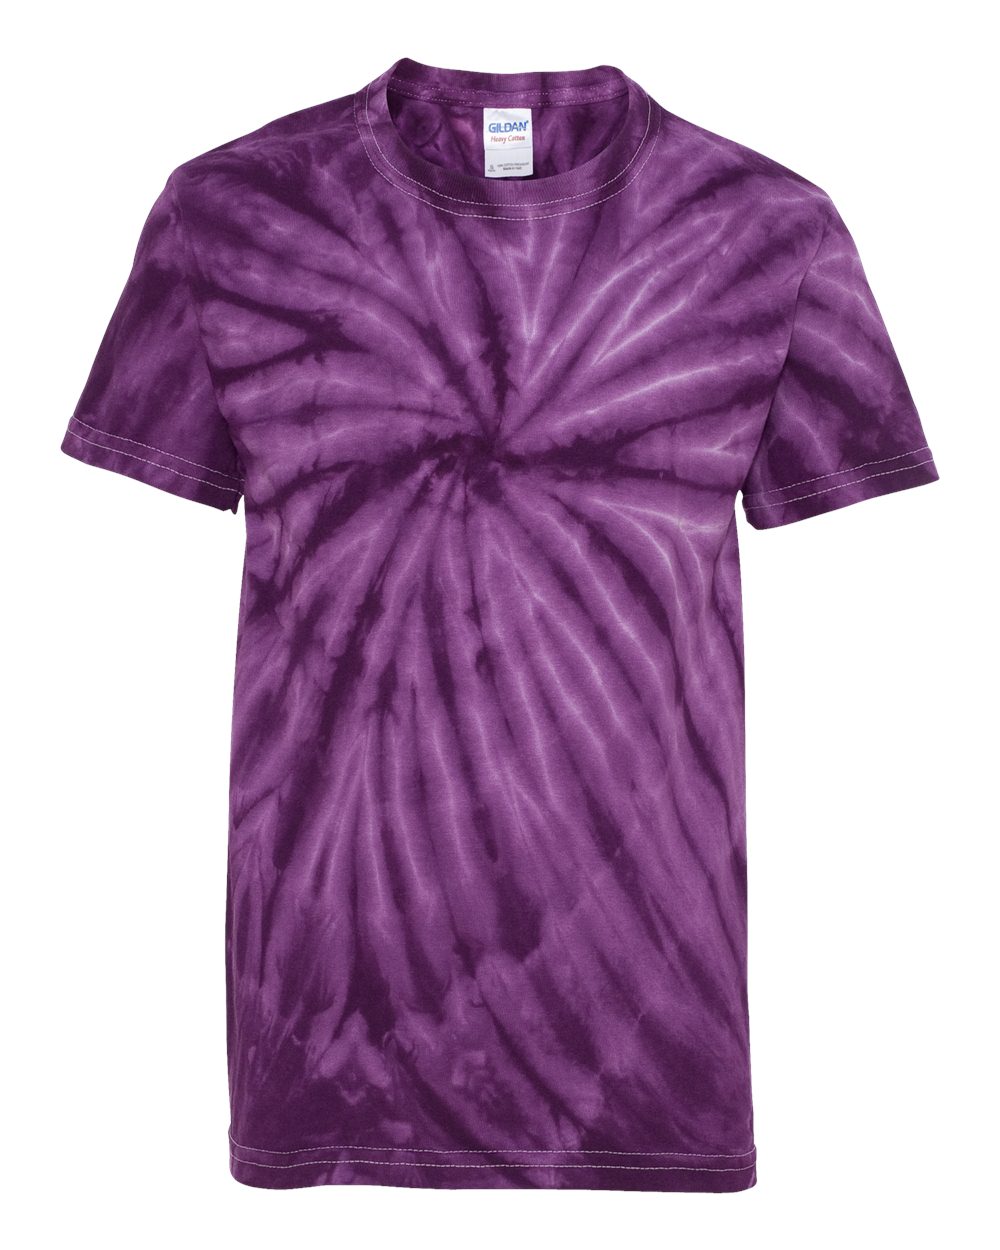 McKeown Design 15 Tie Dye t-shirt